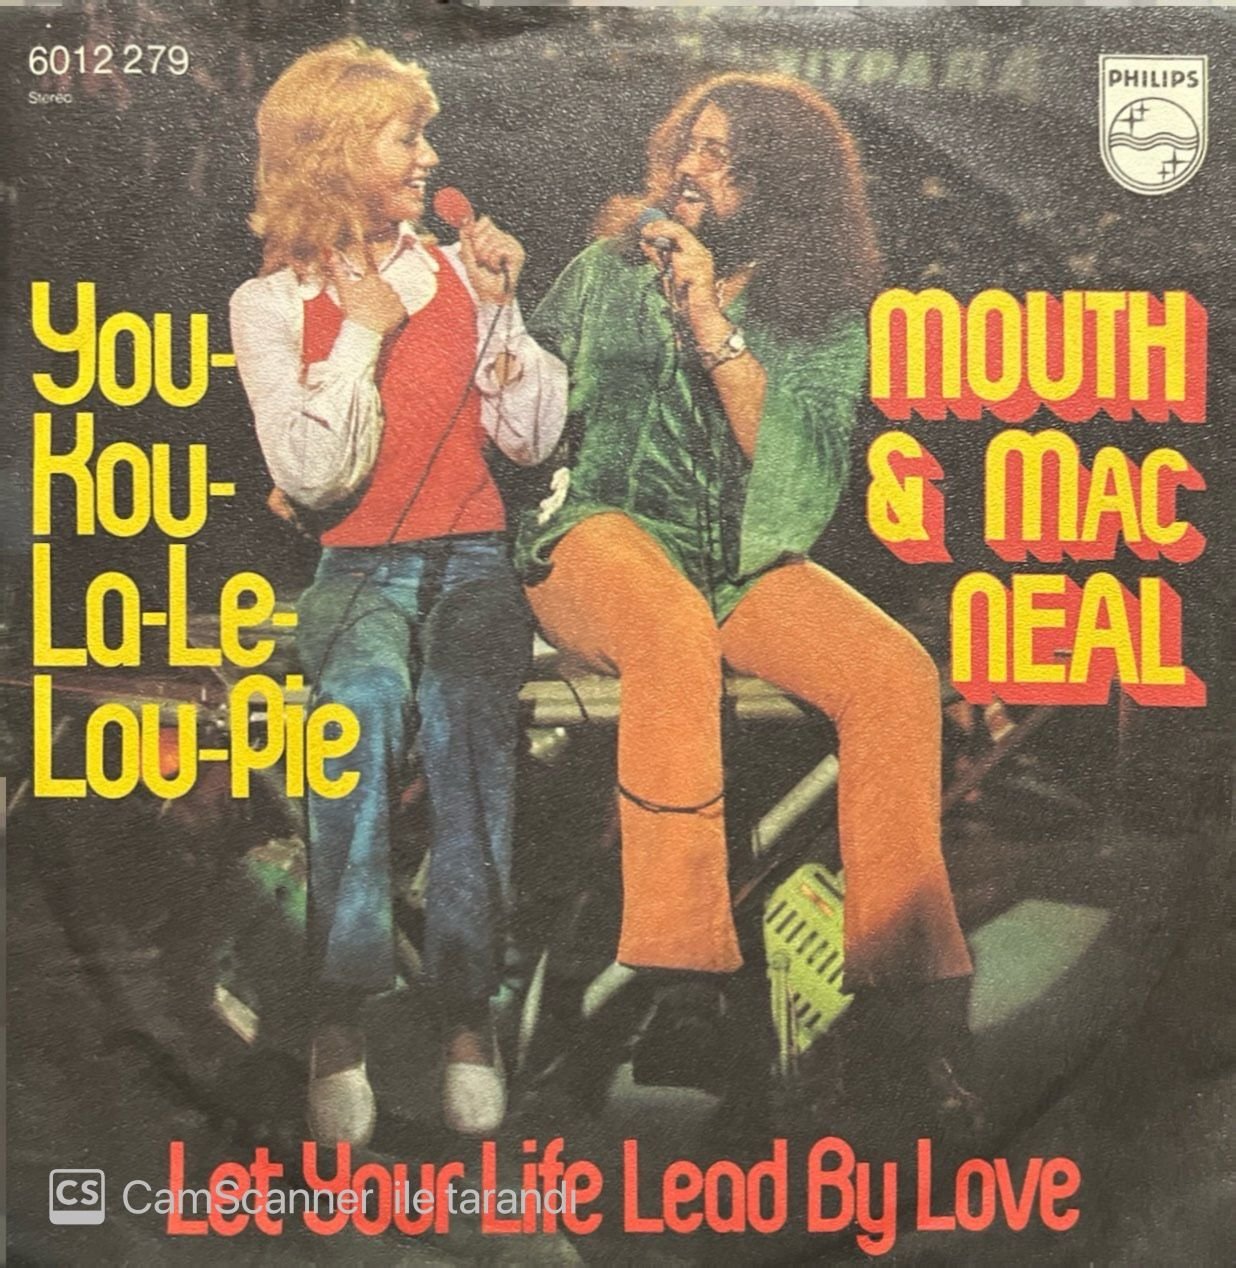 Mouth & Mac Neal You Kou La Le Lou Pie 45lik Plak